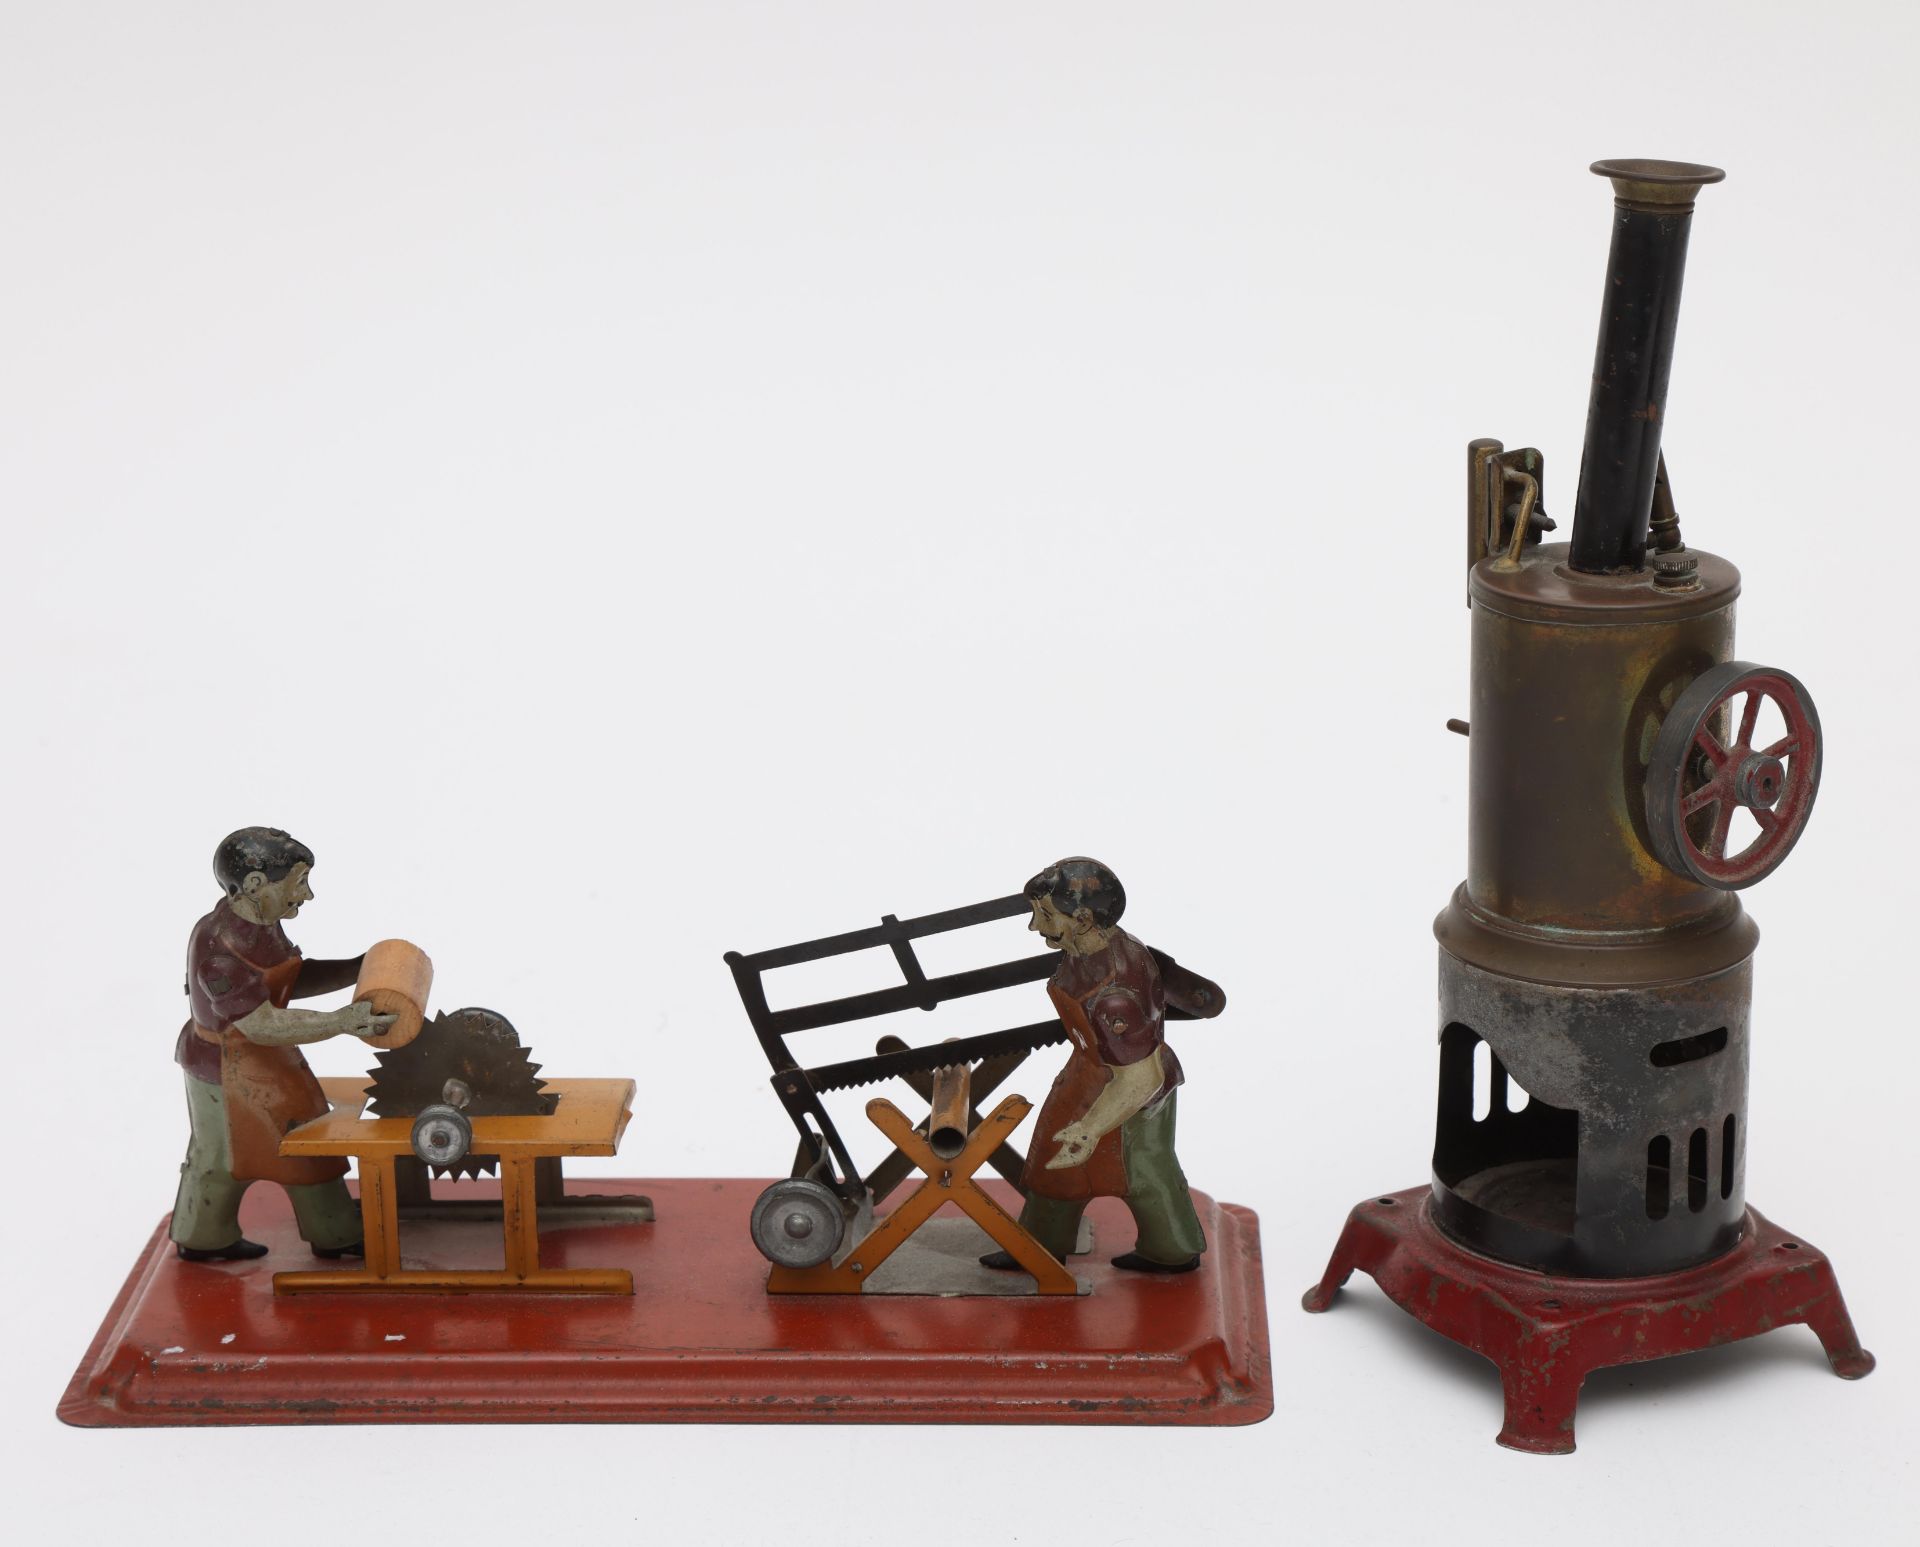 Blikken stoommachine en aandrijfmodel zagerij en slijperij, ca. 1920